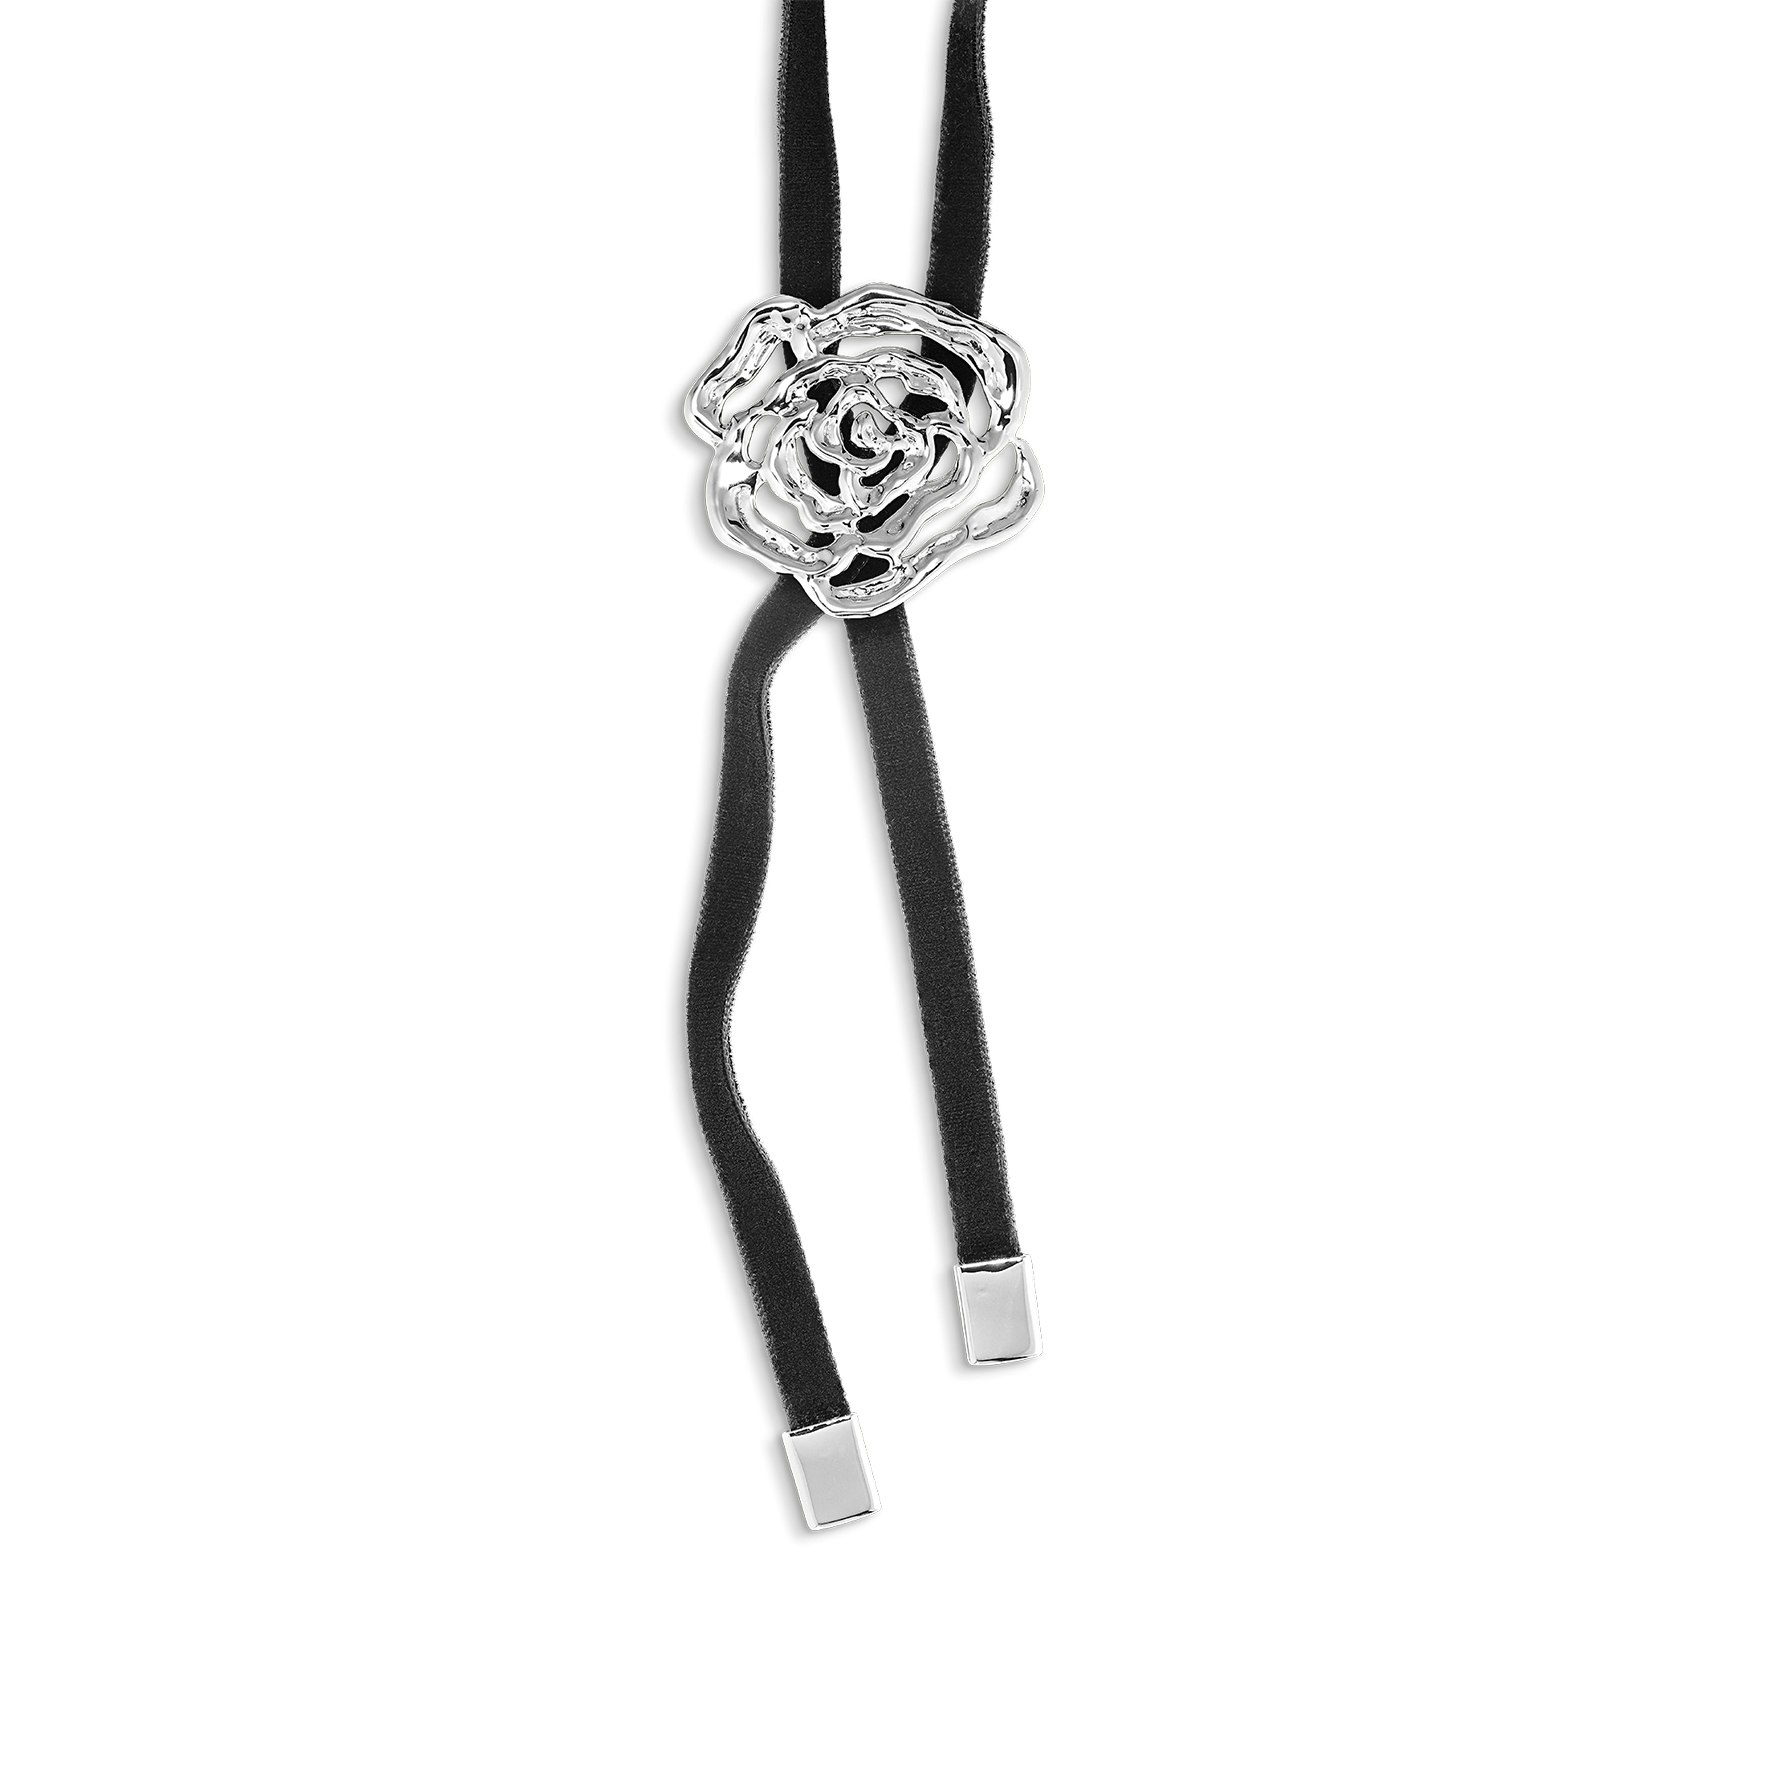 Rosle Bolo Tie Necklace fra Jane Kønig i Forgylt-Sølv Sterling 925